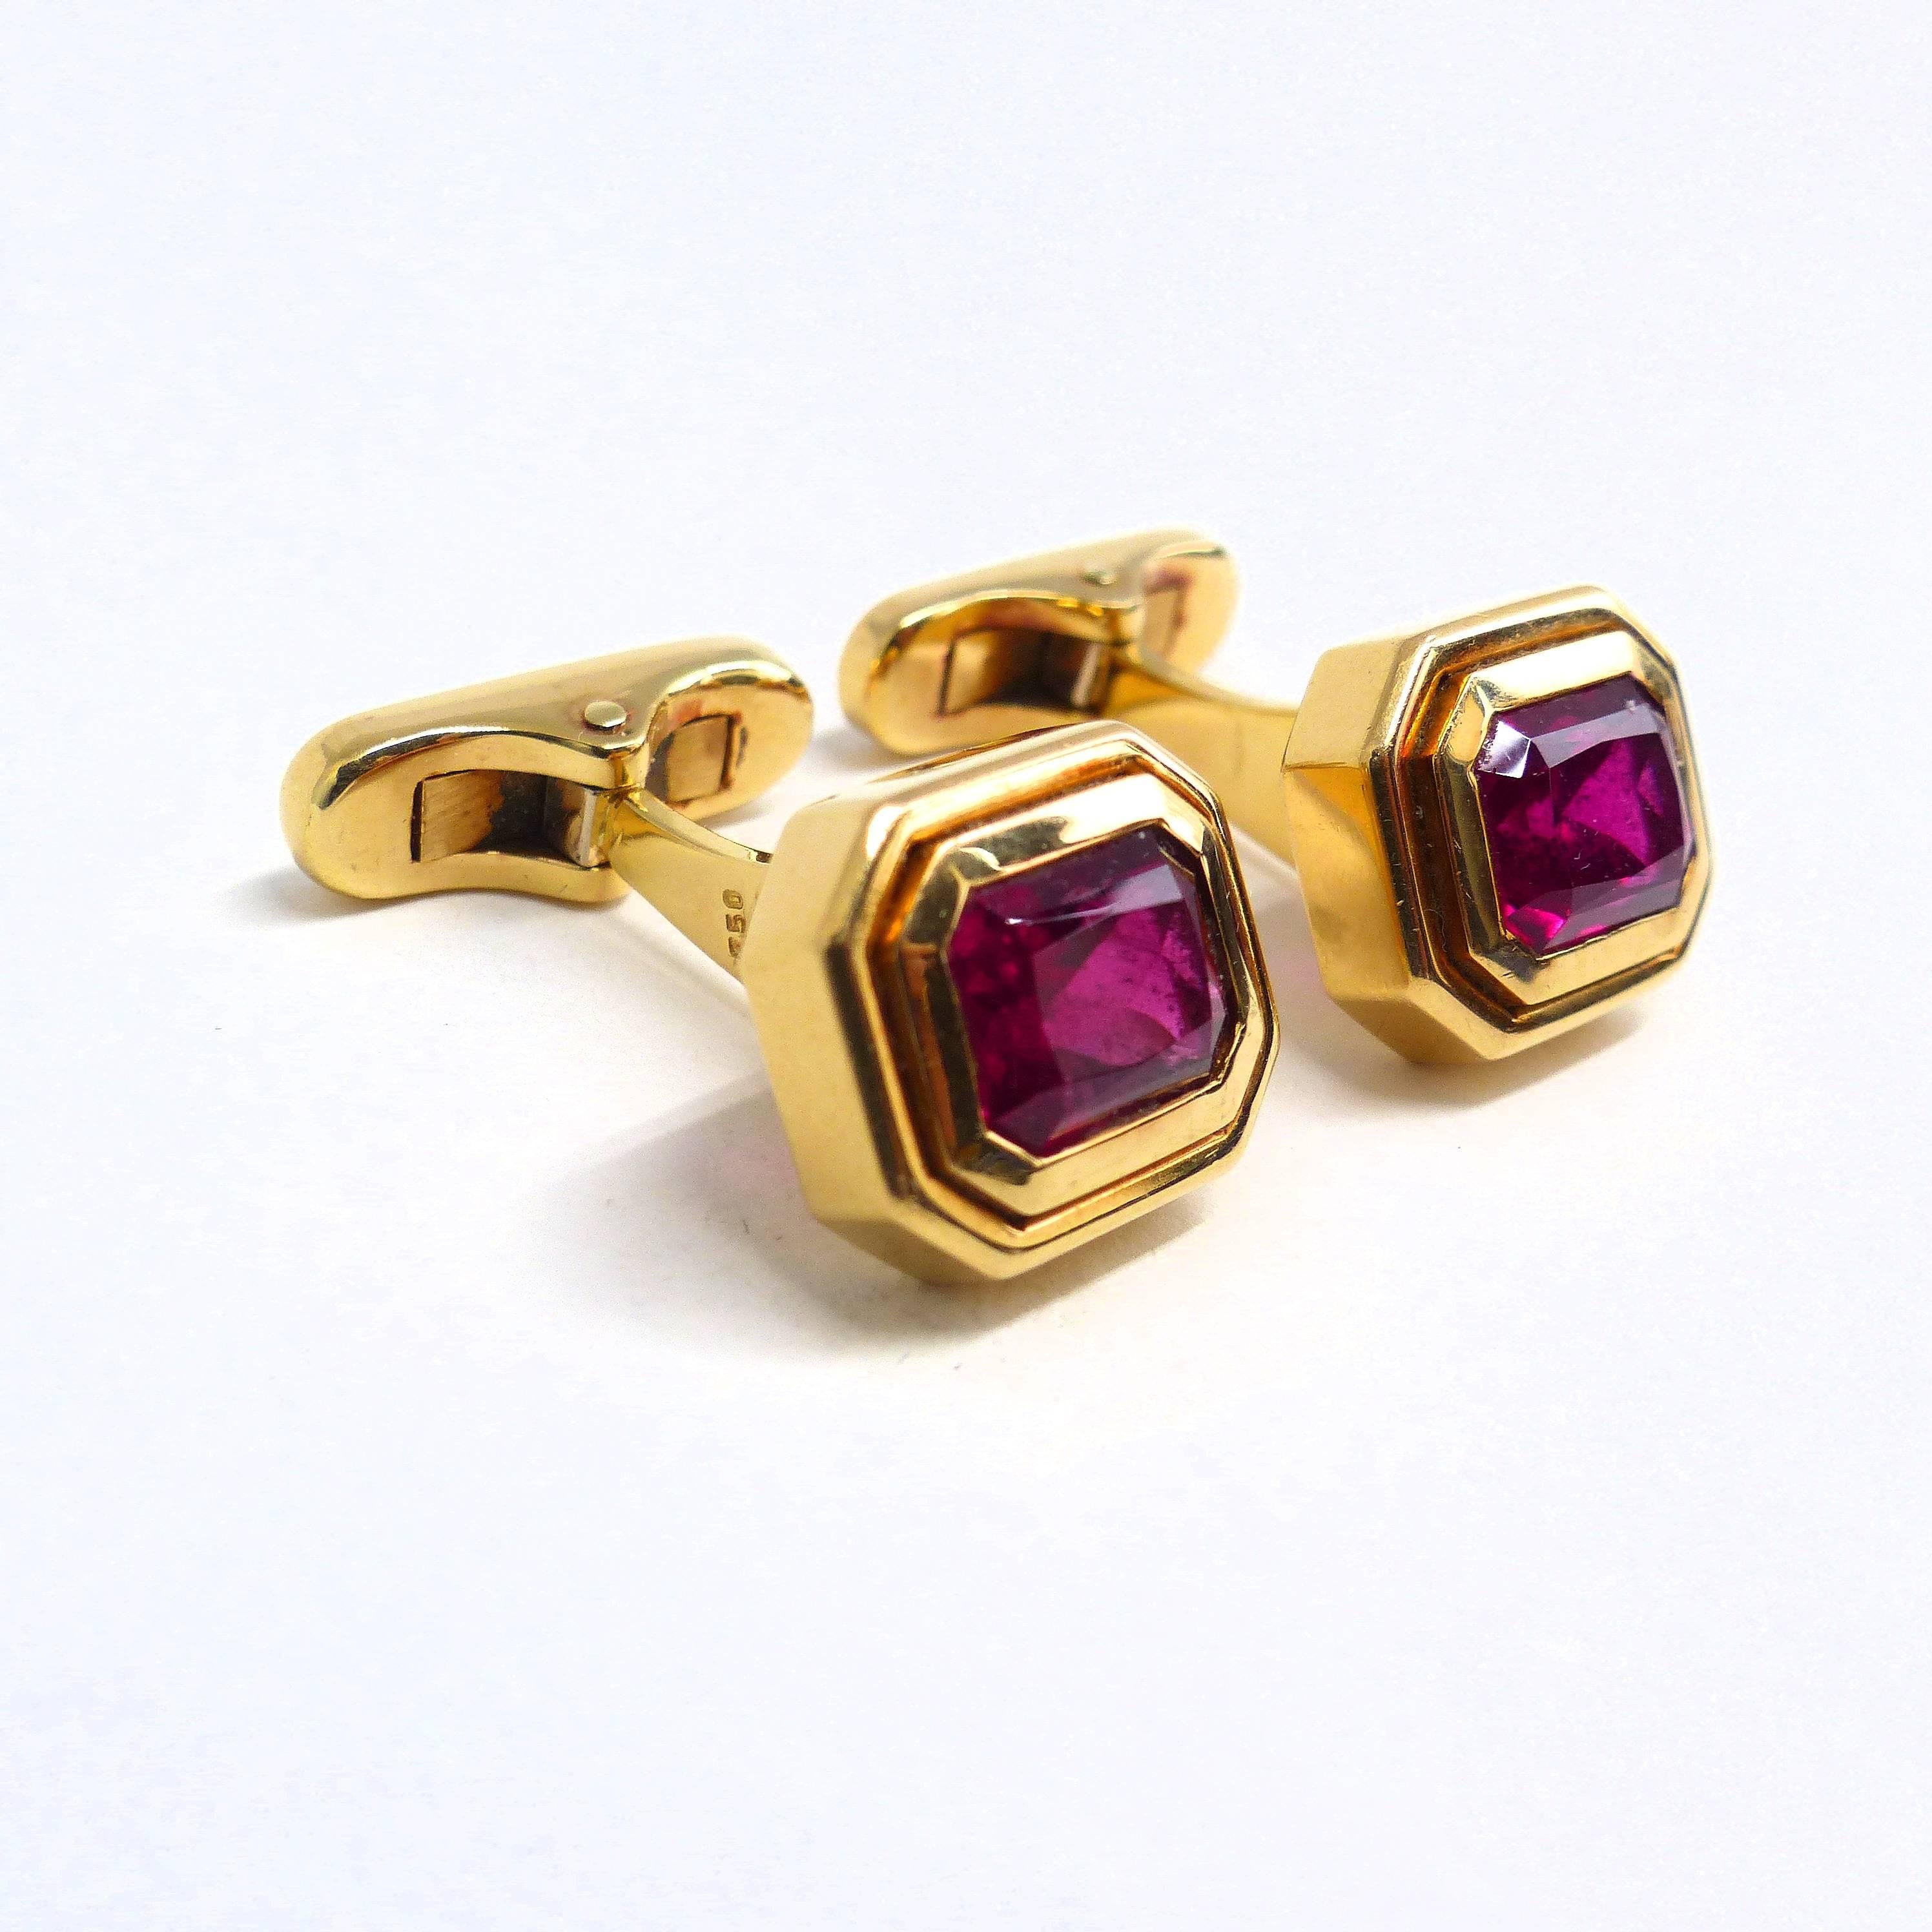 Thomas Leyser est réputé pour ses créations de bijoux contemporains utilisant des pierres précieuses fines. 

Ces boutons de manchette en or rose 18 carats (23,70 g) sont sertis de 2 rubélites facettées de qualité supérieure en forme d'émeraude, 9x7